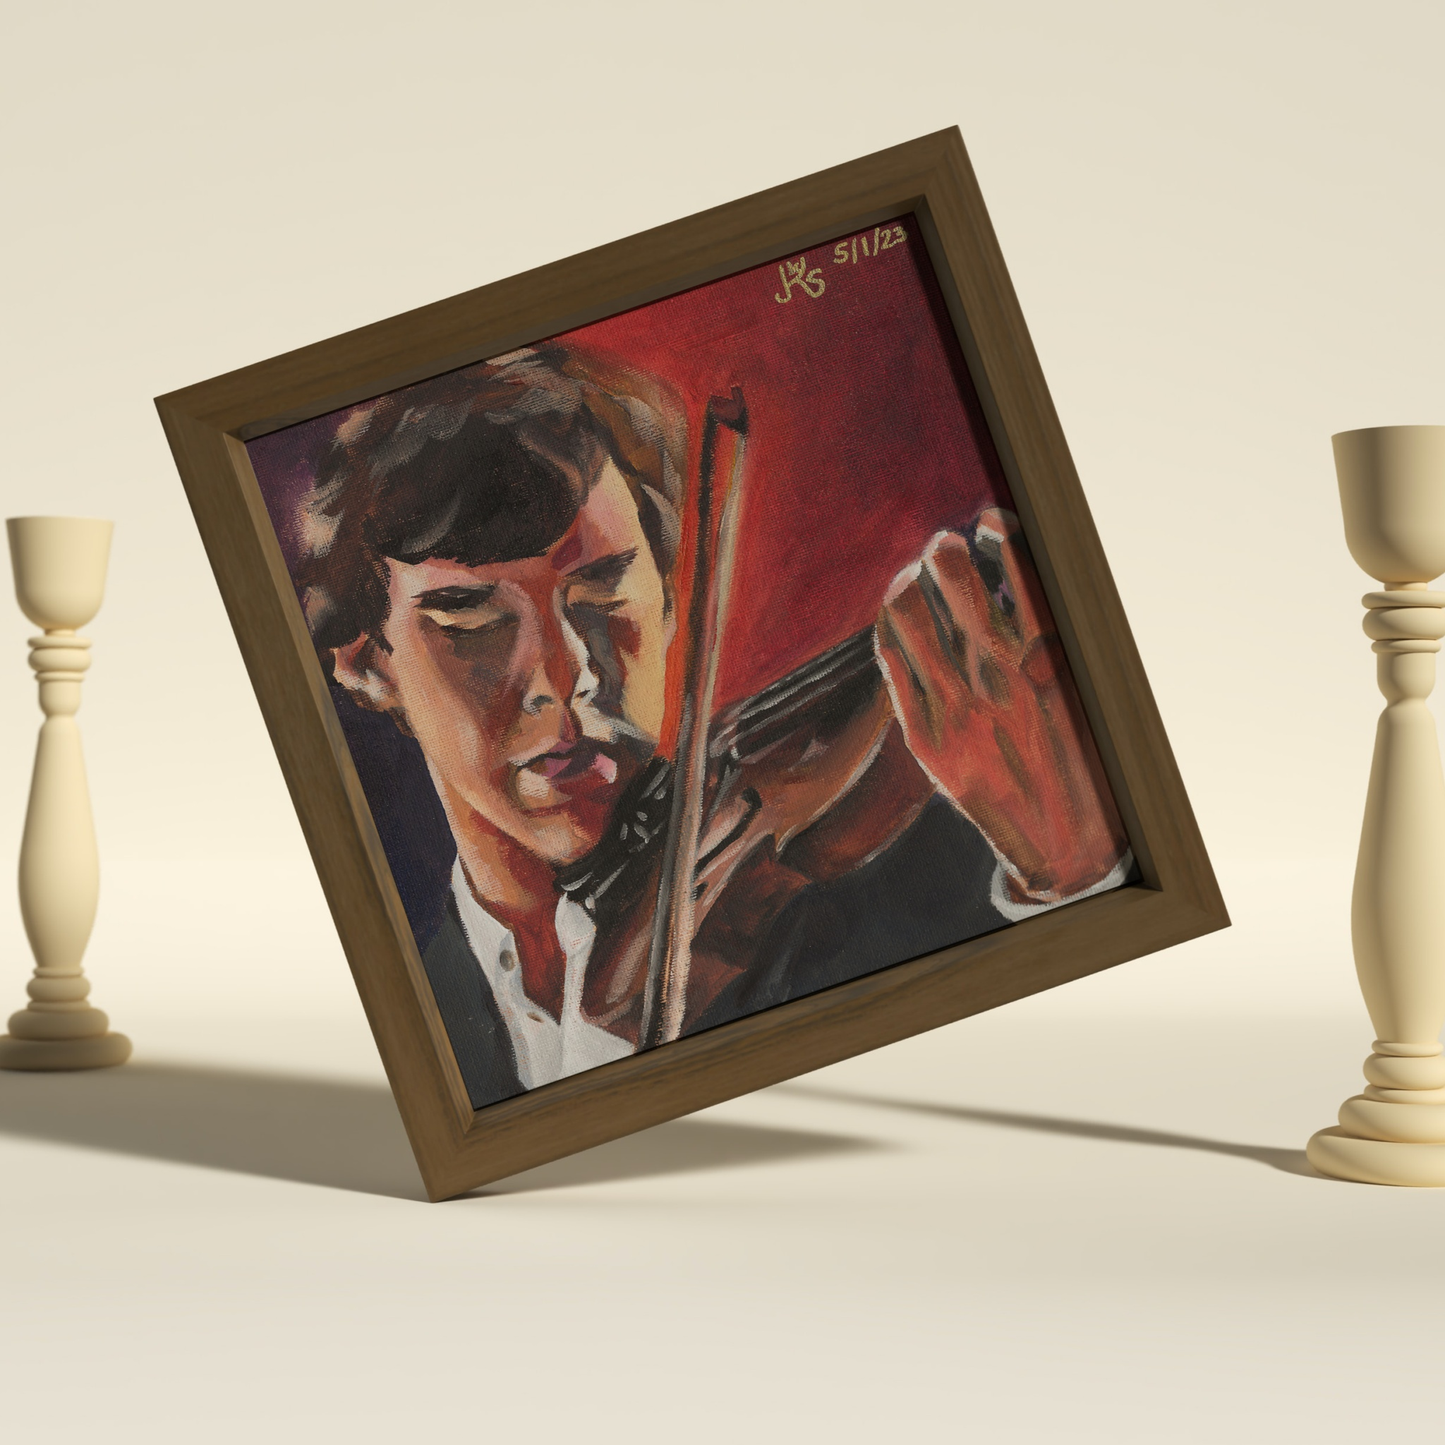 Postkartenset "Holmes & Watson" in Fine Art Qualität limitiert auf 250 Sets